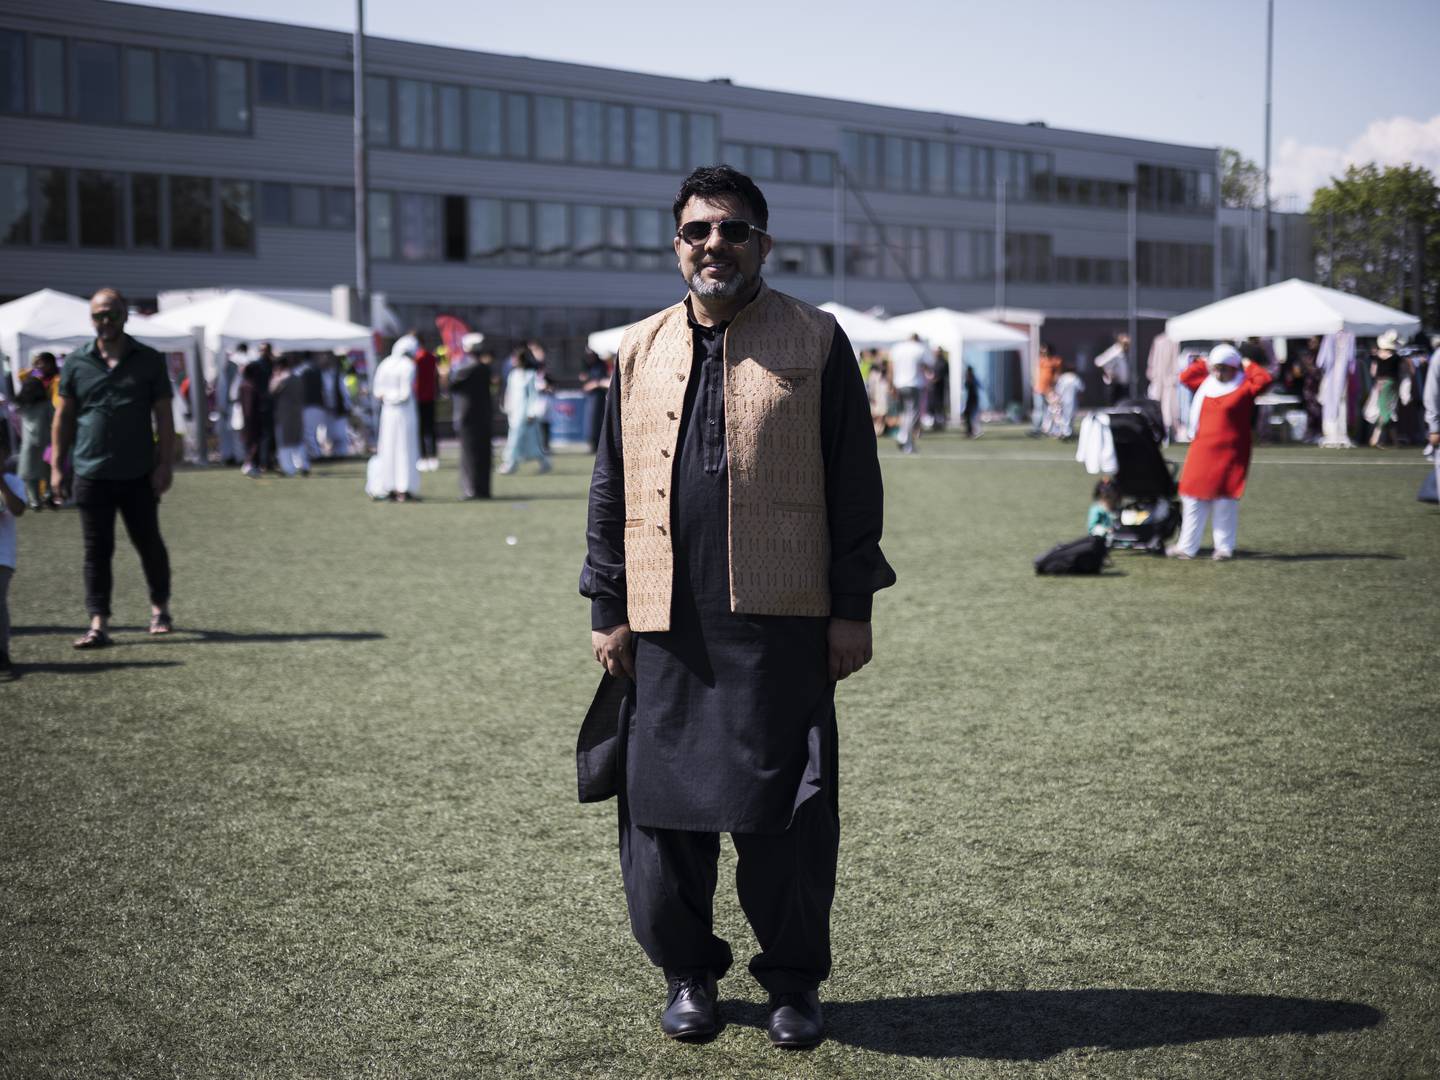 Feiring av Eid-ul-Adha på Haugerud kunstgressbane. Både muslimer og ikke-muslimer inviteres når moskeen, kirken, idrett, bydelen og flere samfunnsaktører går sammen og arrangerer «brobyggingsfestival» på selve Eid-dagen.